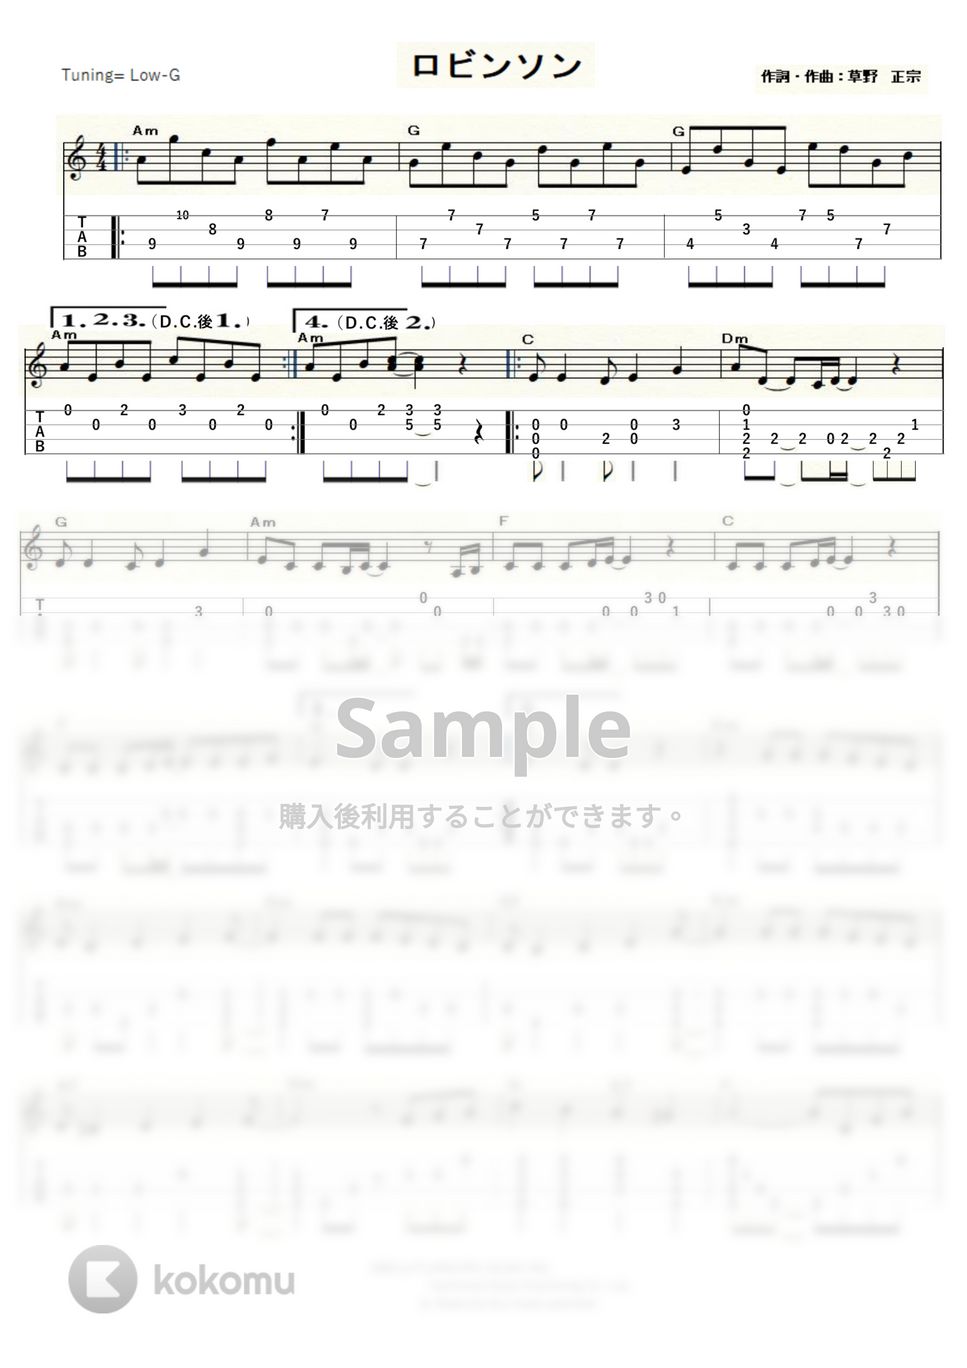 スピッツ - ロビンソン (ｳｸﾚﾚｿﾛ / Low-G / 中級) by ukulelepapa